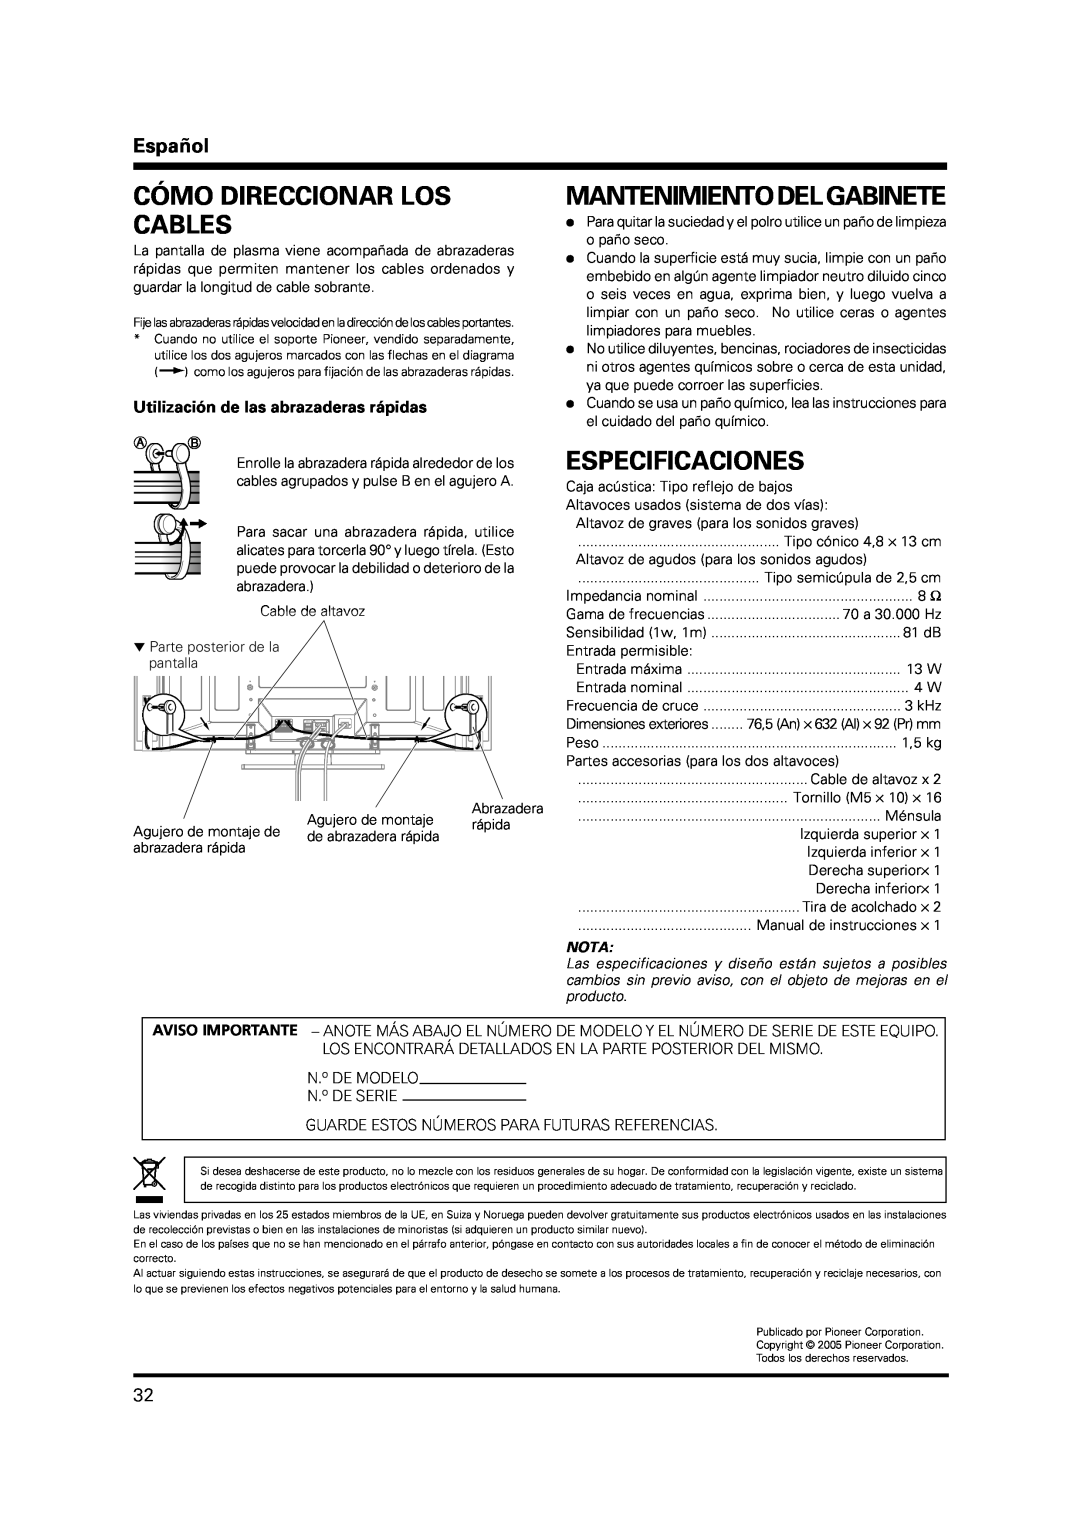 Pioneer PDP-S37 manual Cómo Direccionar Los Cables, Mantenimiento Del Gabinete, Especificaciones, Español, Nota 